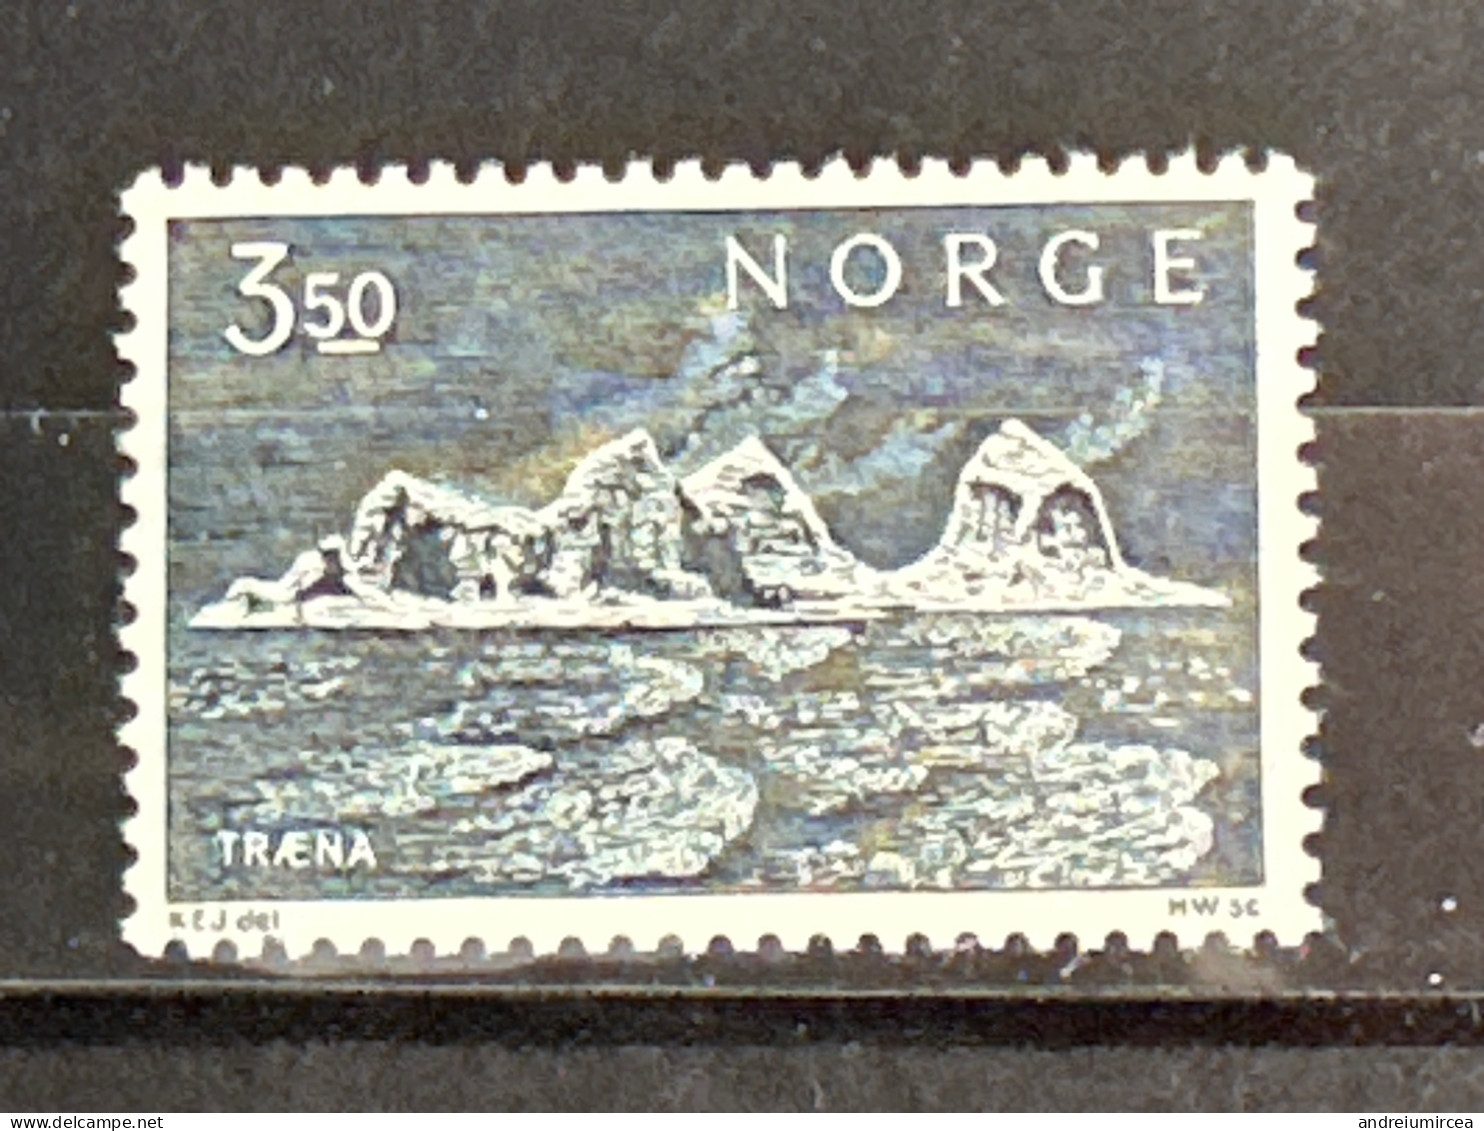 Norvege MNH - Unused Stamps